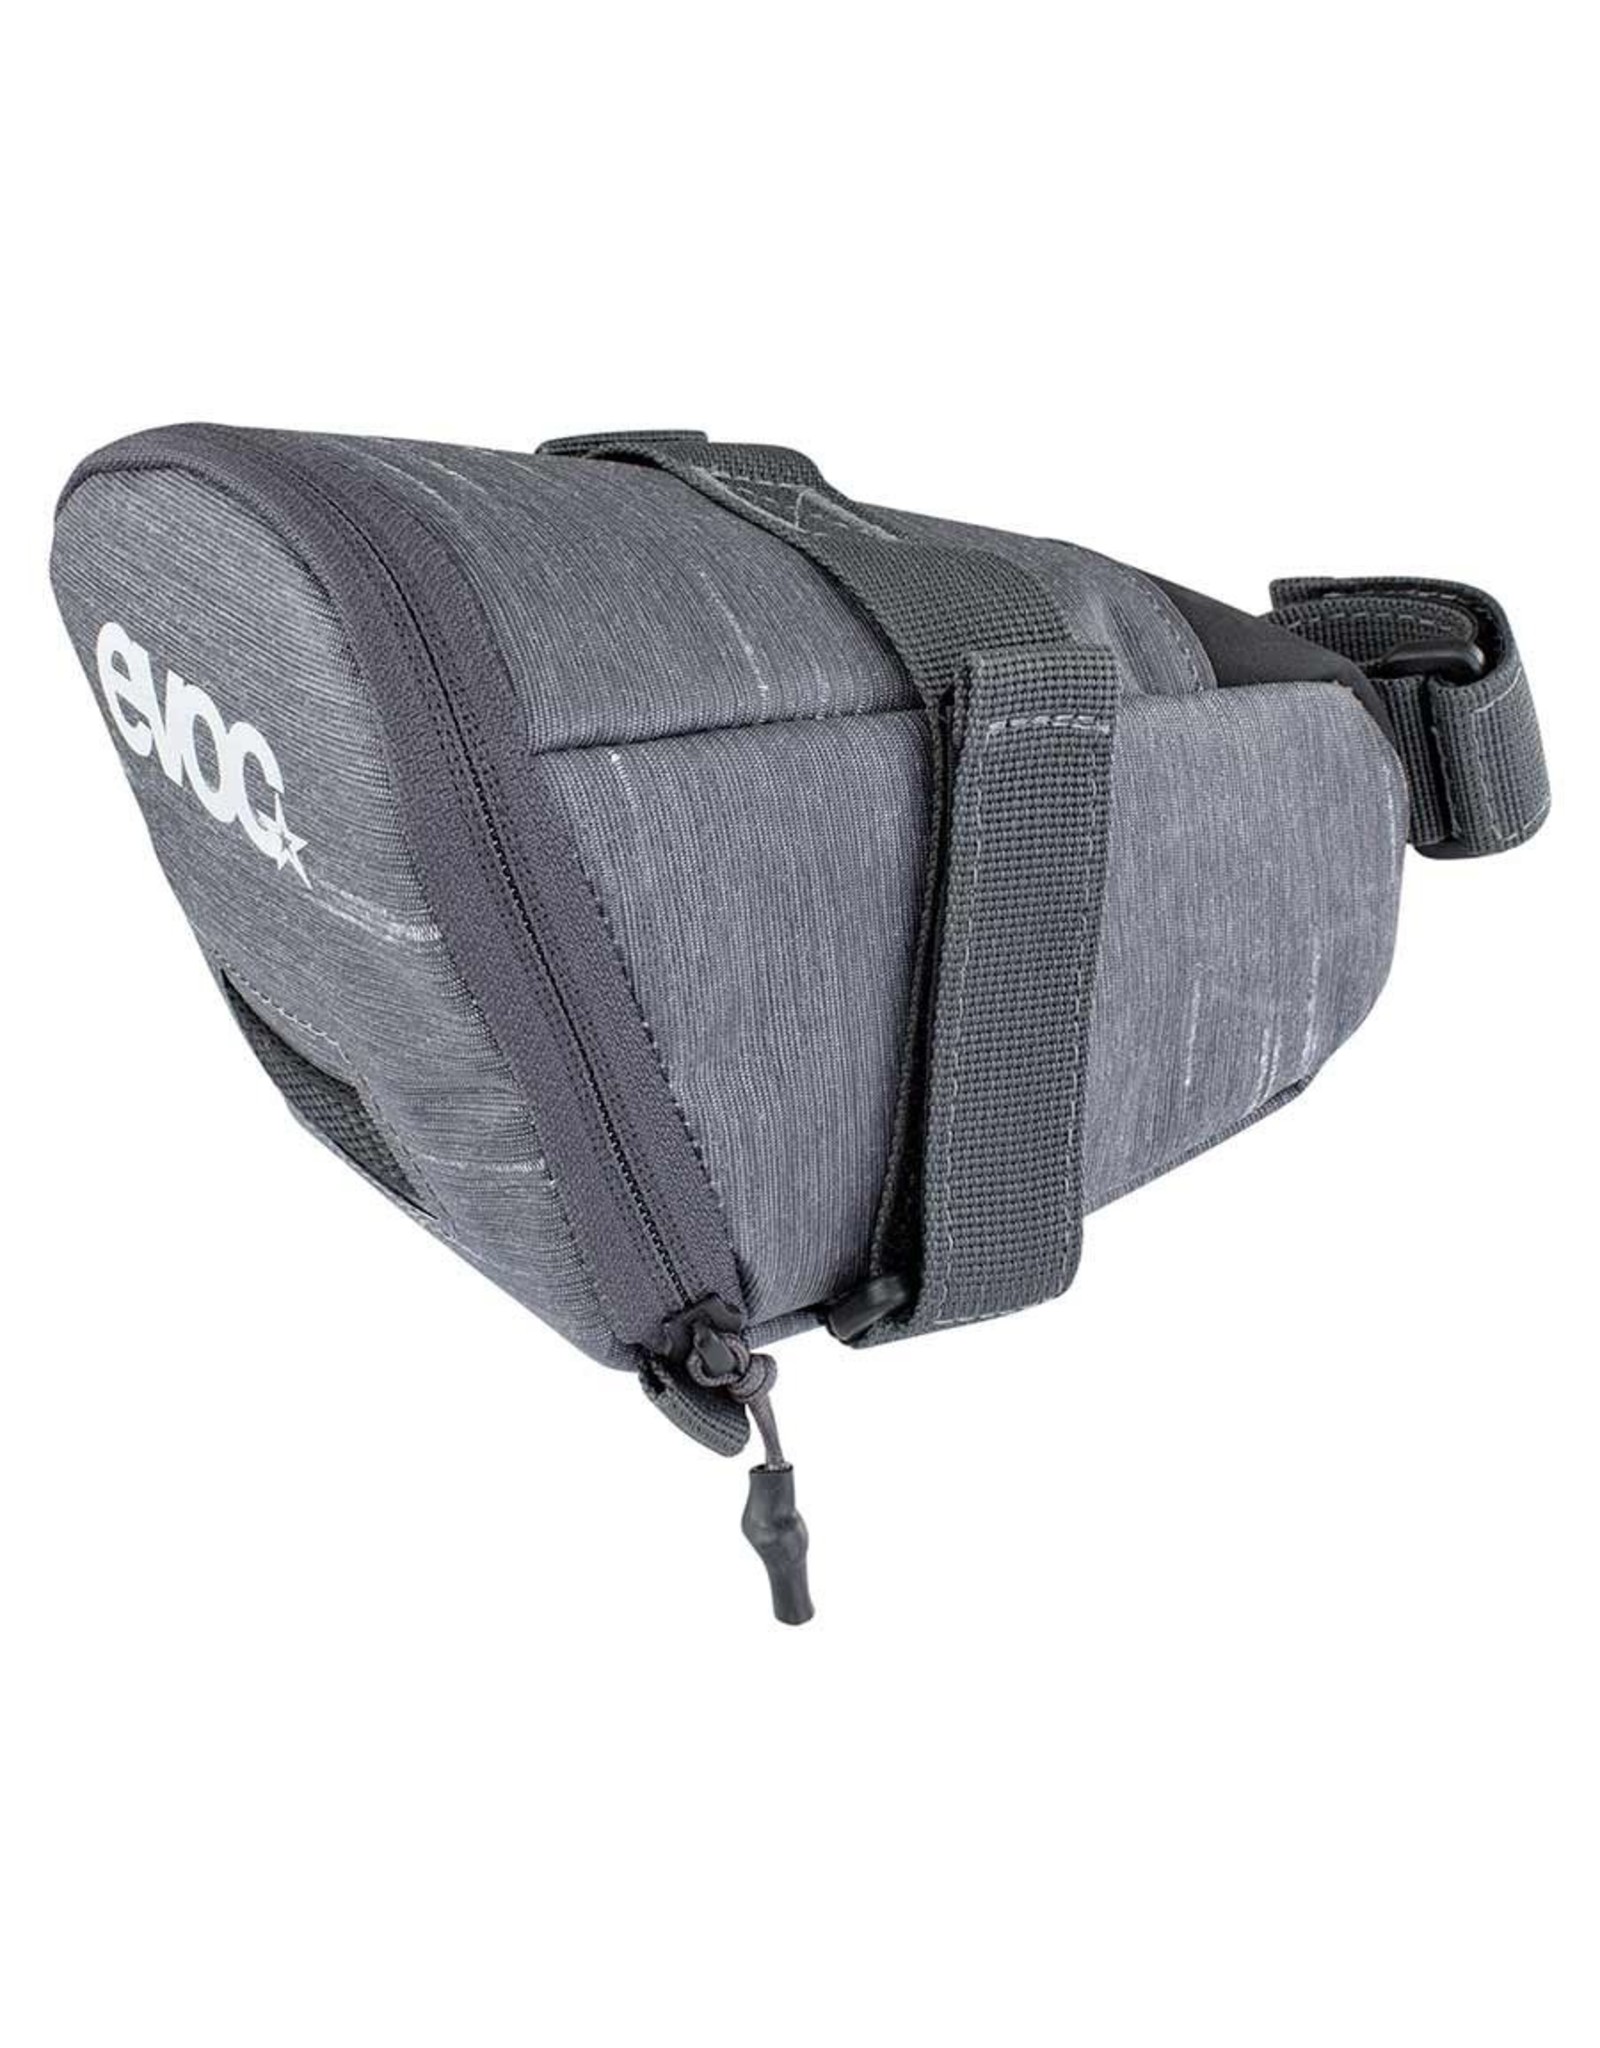 EVOC EVOC Saddle Bag Tour 1L - Grey